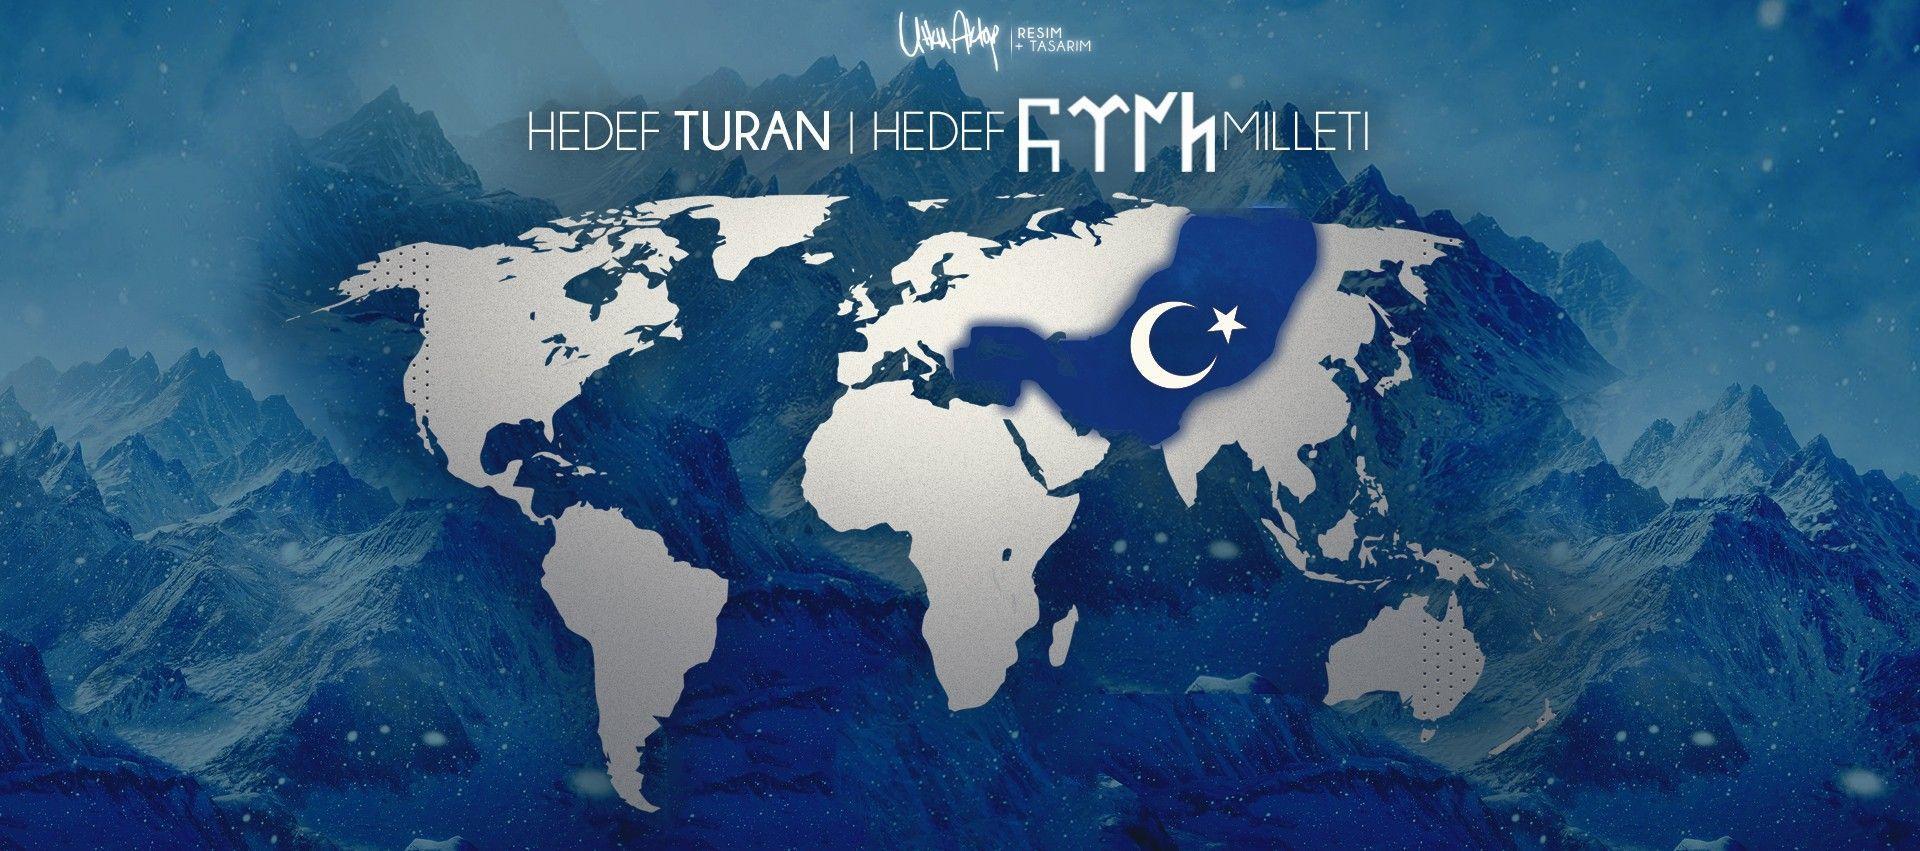 brothers, Turkish Navy, Turkish, Turan, World, Map, Turkey